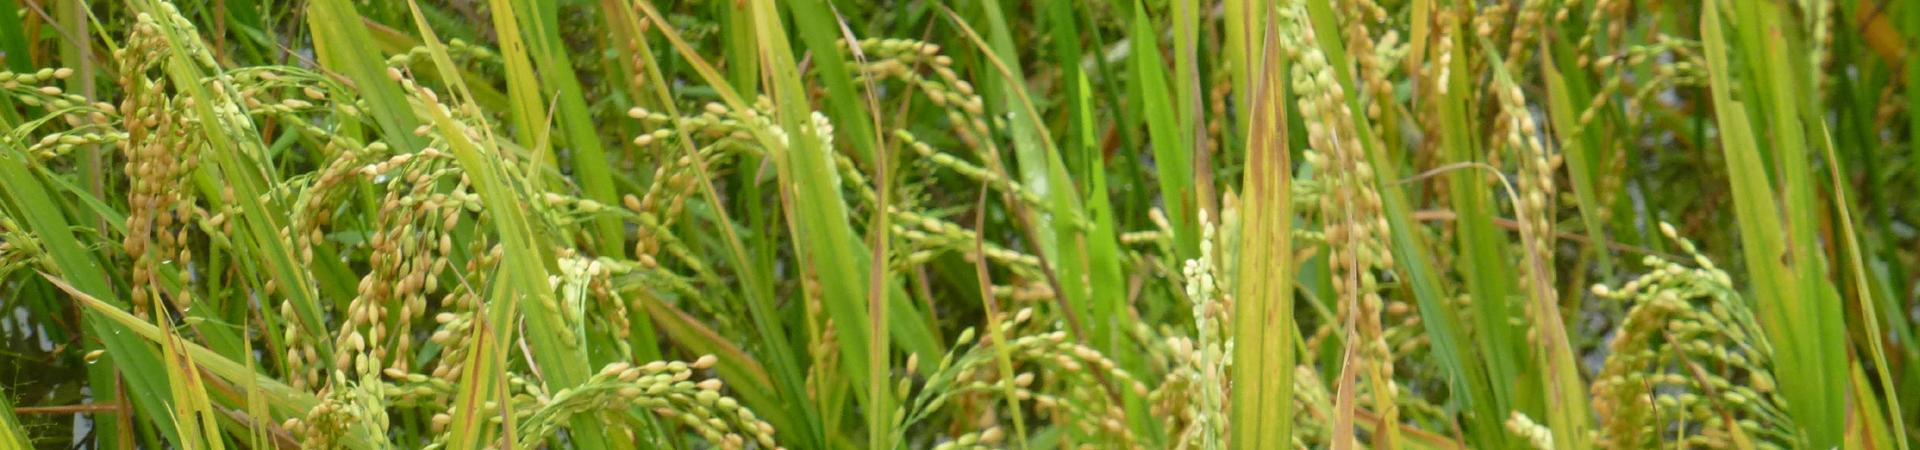 Reisfelder mit reifen Reisrispen